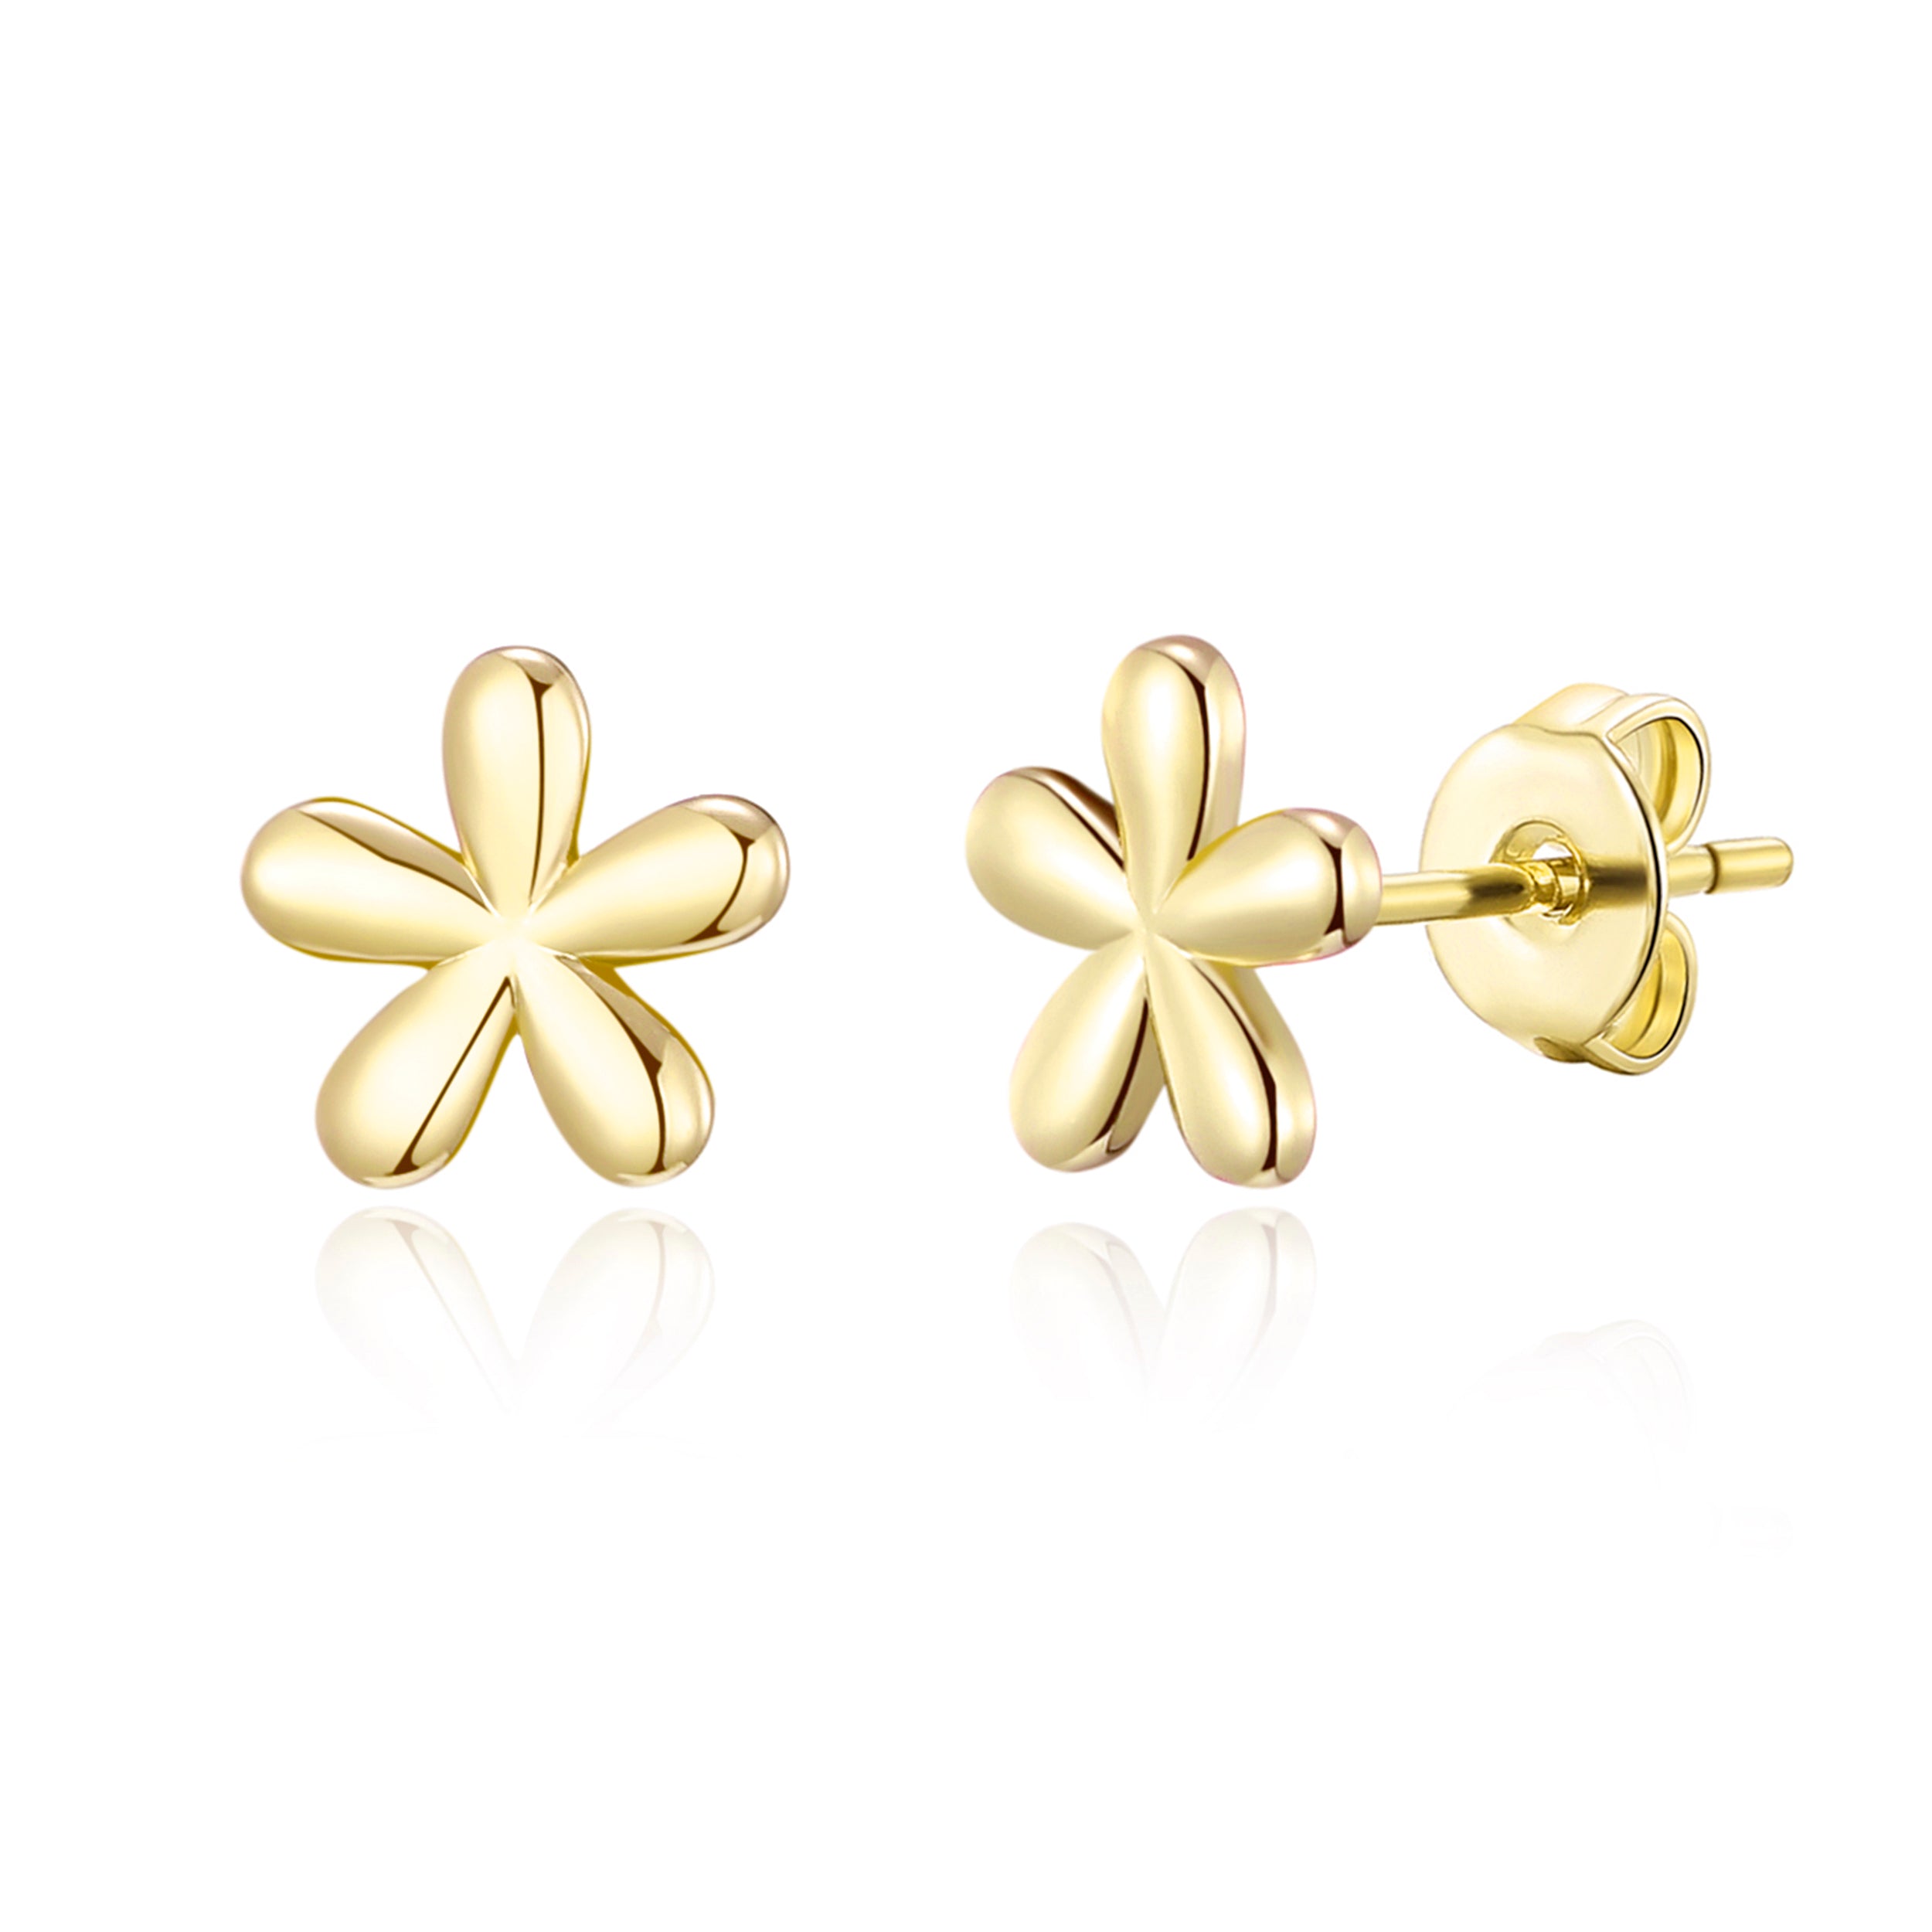 Gold Plated Flower Stud Earrings by Philip Jones Jewellery